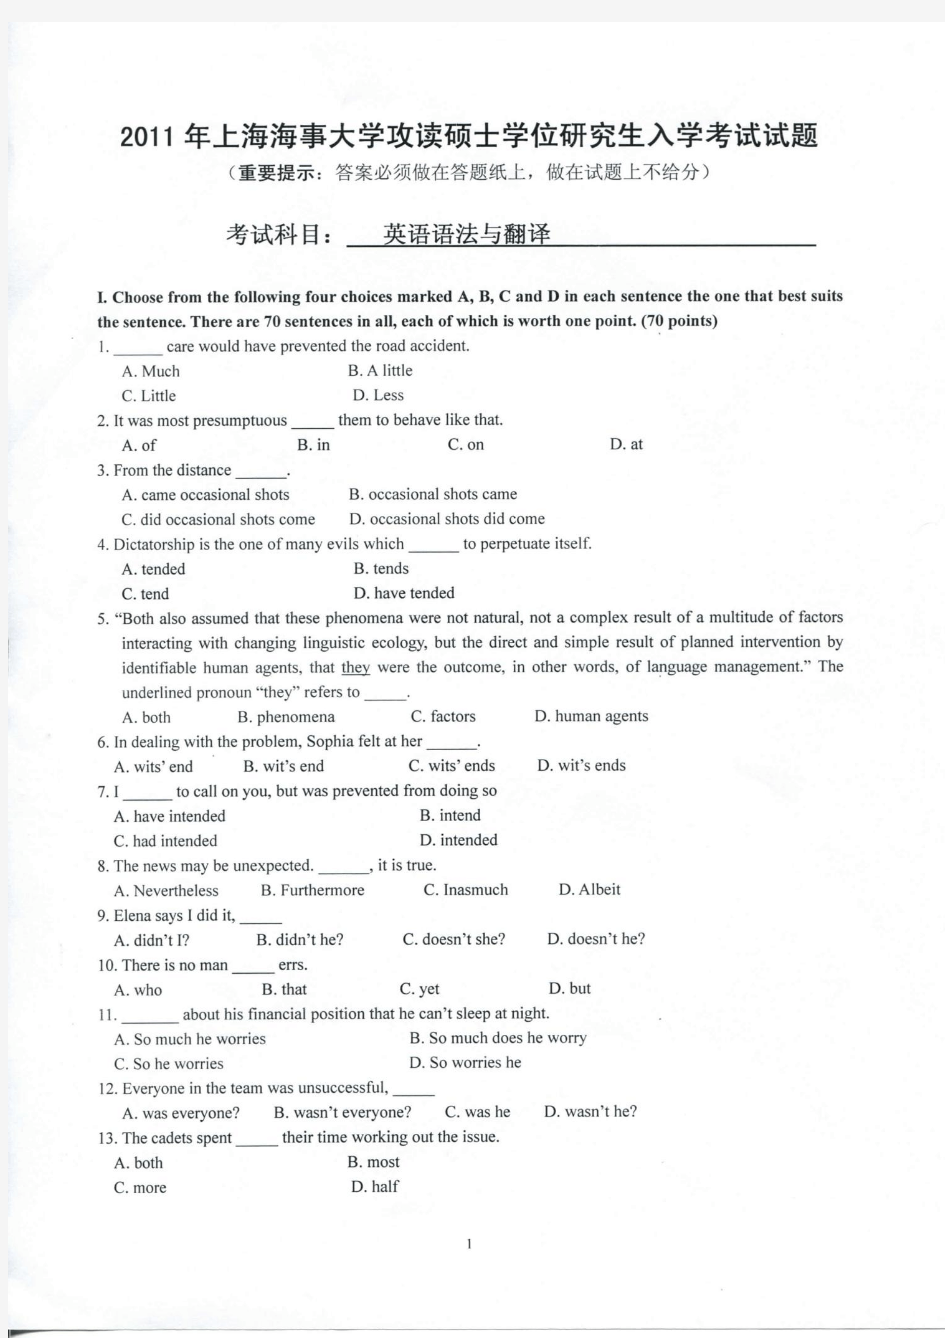 上海海事大学-2011 年攻读硕士学位研究生入学考试试题-英语与法语翻译